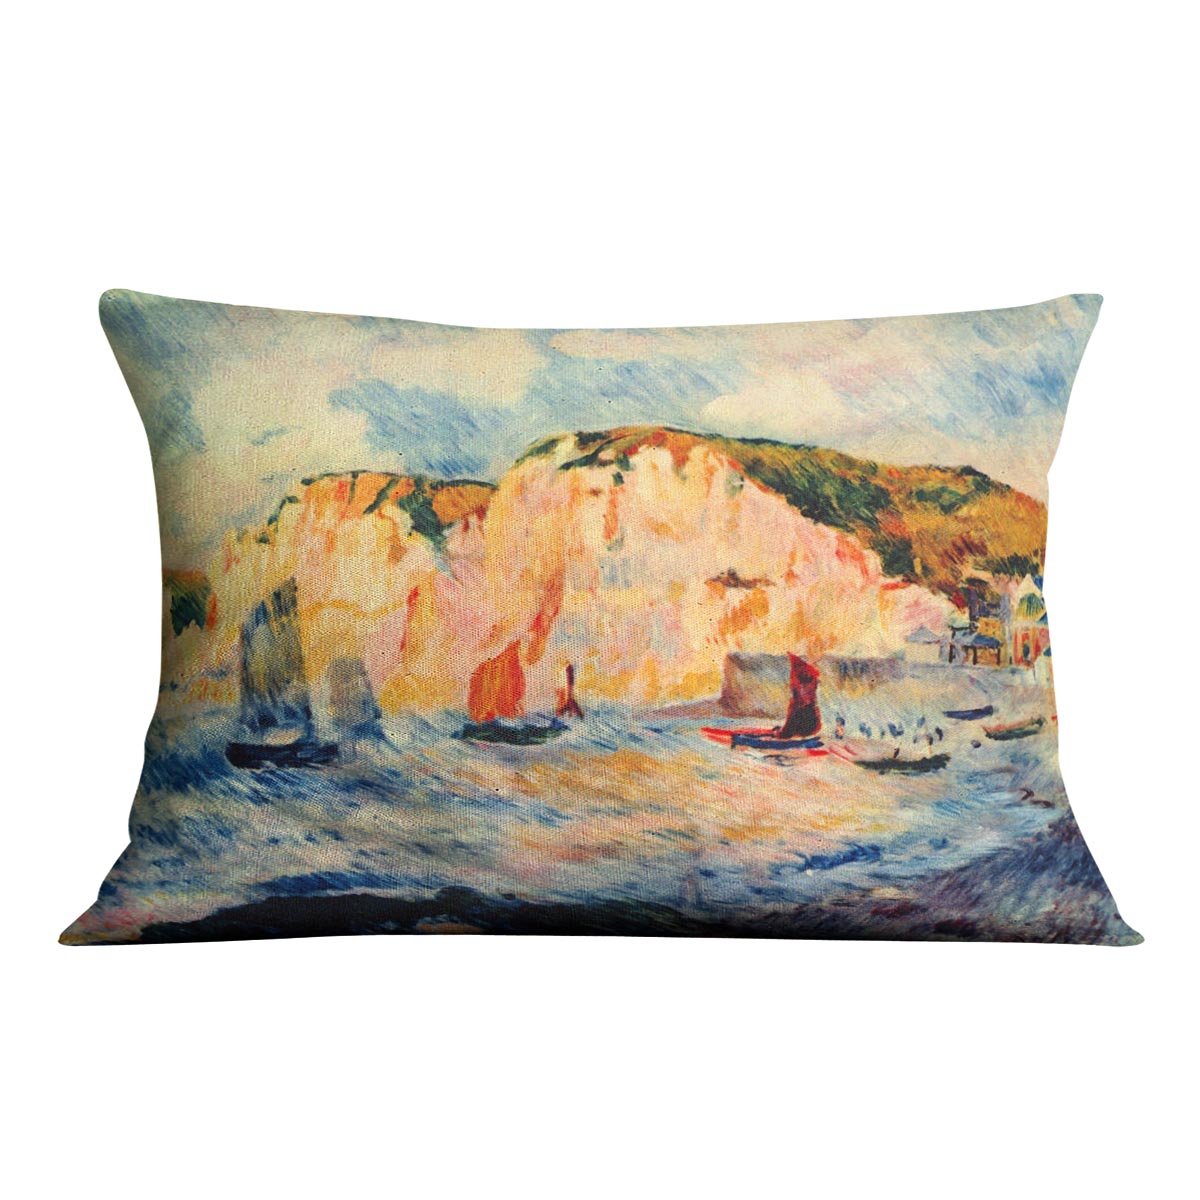 Sea and cliffs by Renoir Cushion